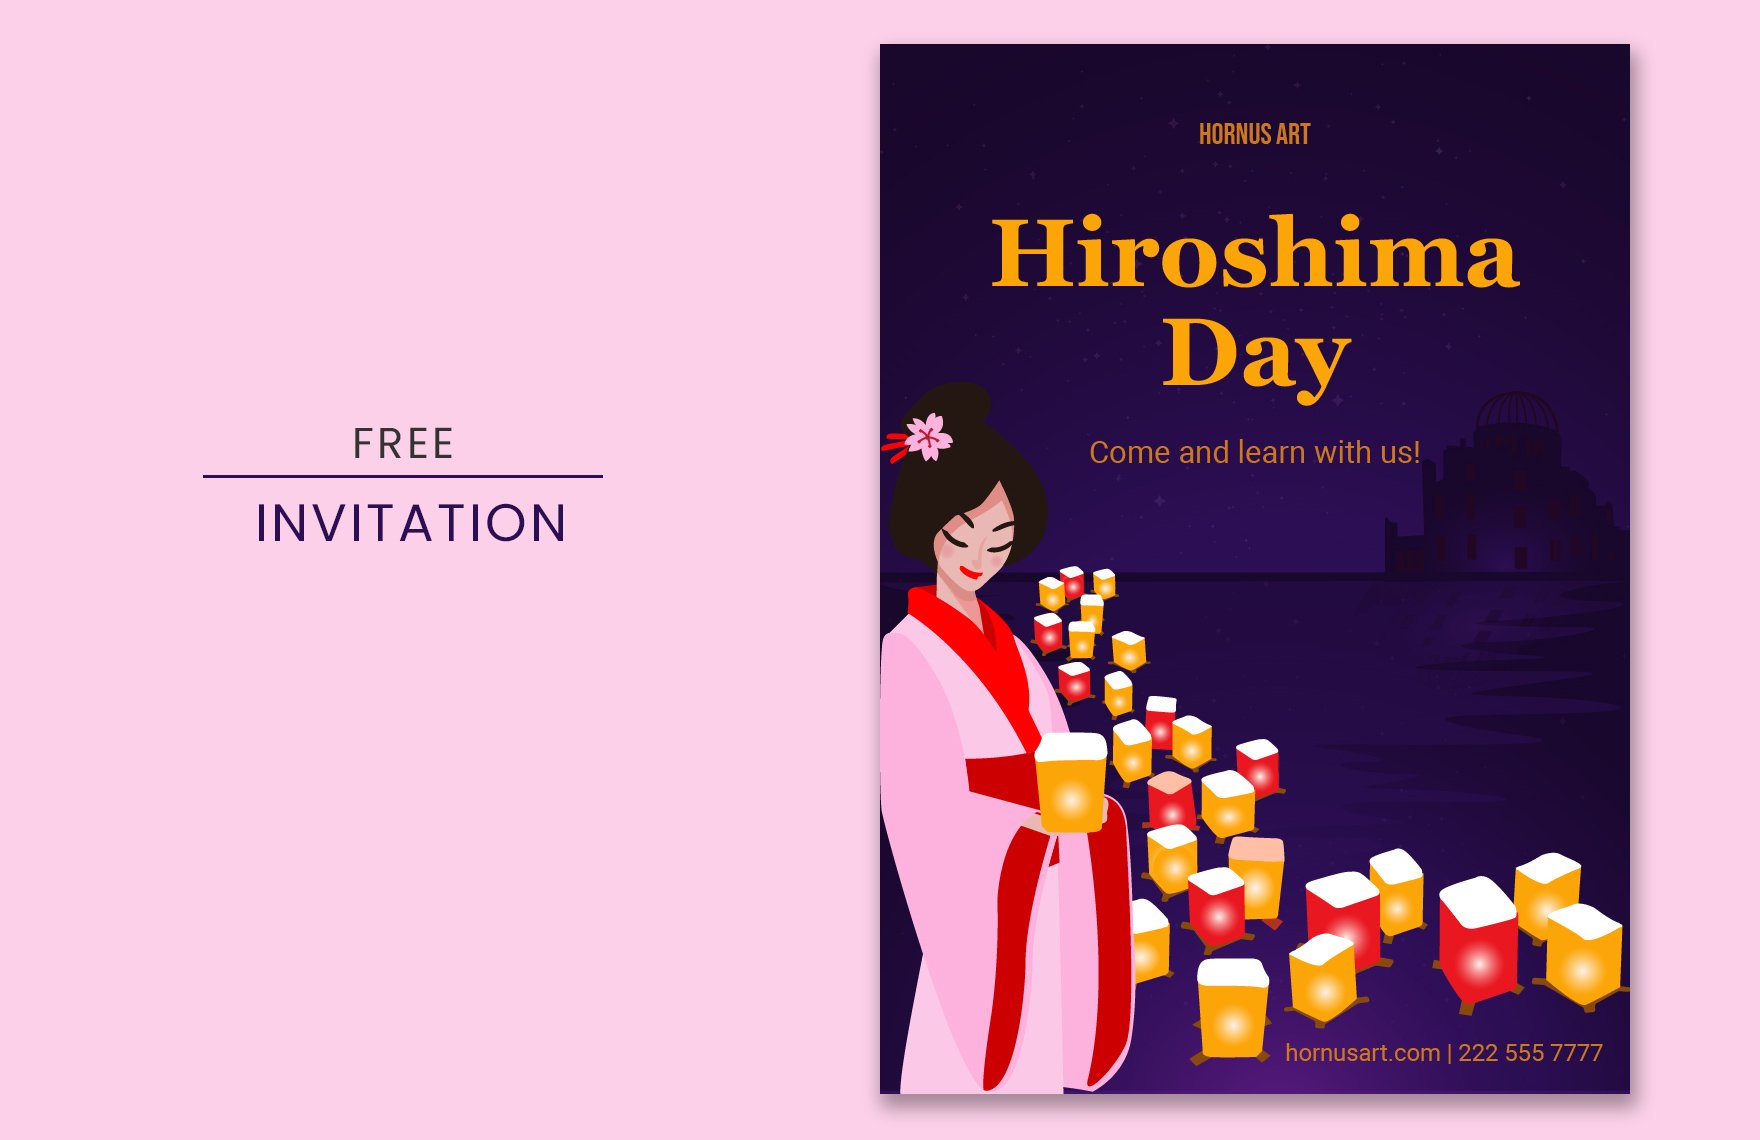 Hiroshima Day Invitation in PDF, Illustrator, SVG, JPEG